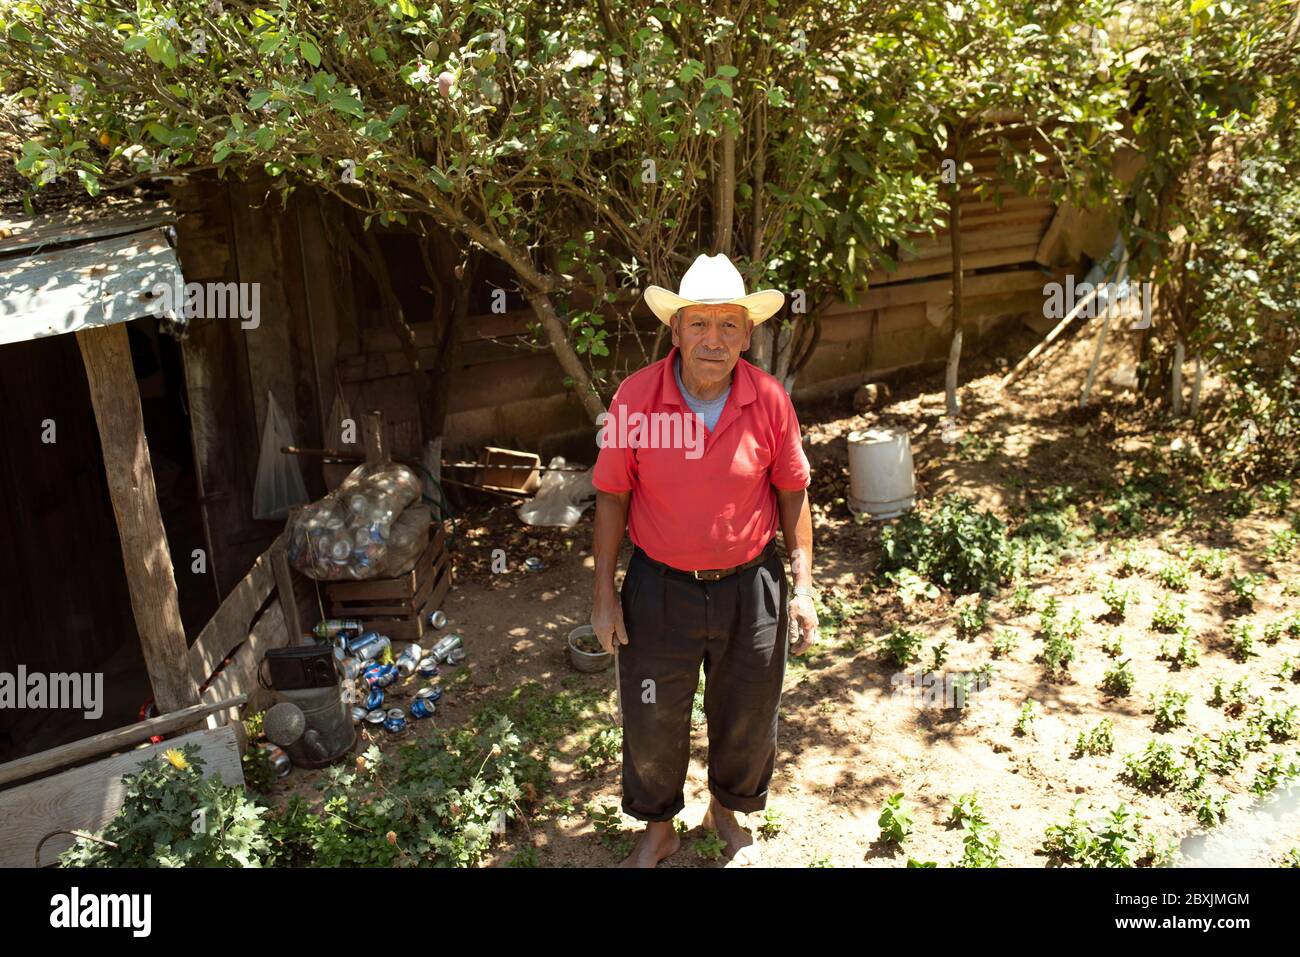 Porträt eines Latino-Mannes, der Sombrero trägt, während er in seinem kleinen Garten arbeitet. Almolonga, Guatemala Stockfoto